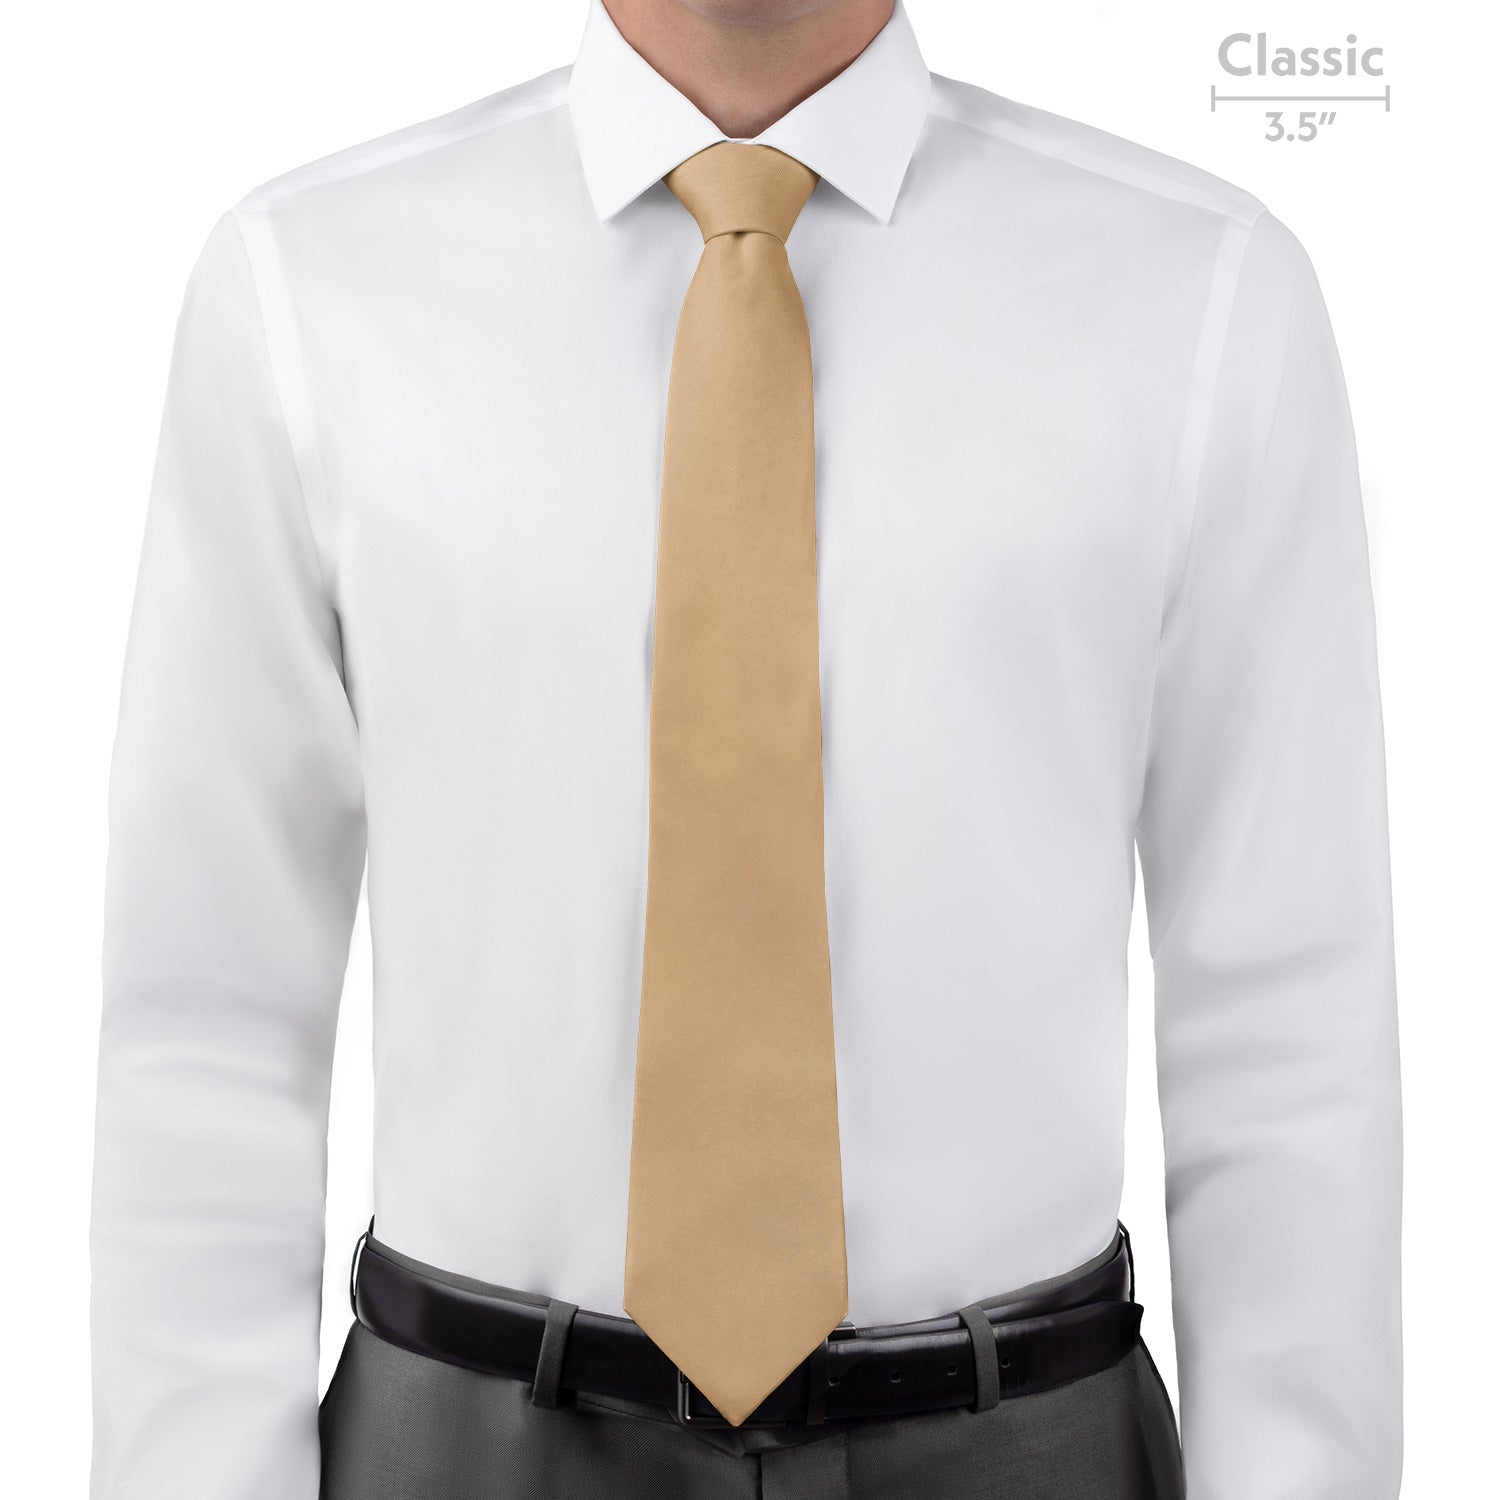 Azazie Sand Necktie - Classic - Knotty Tie Co.